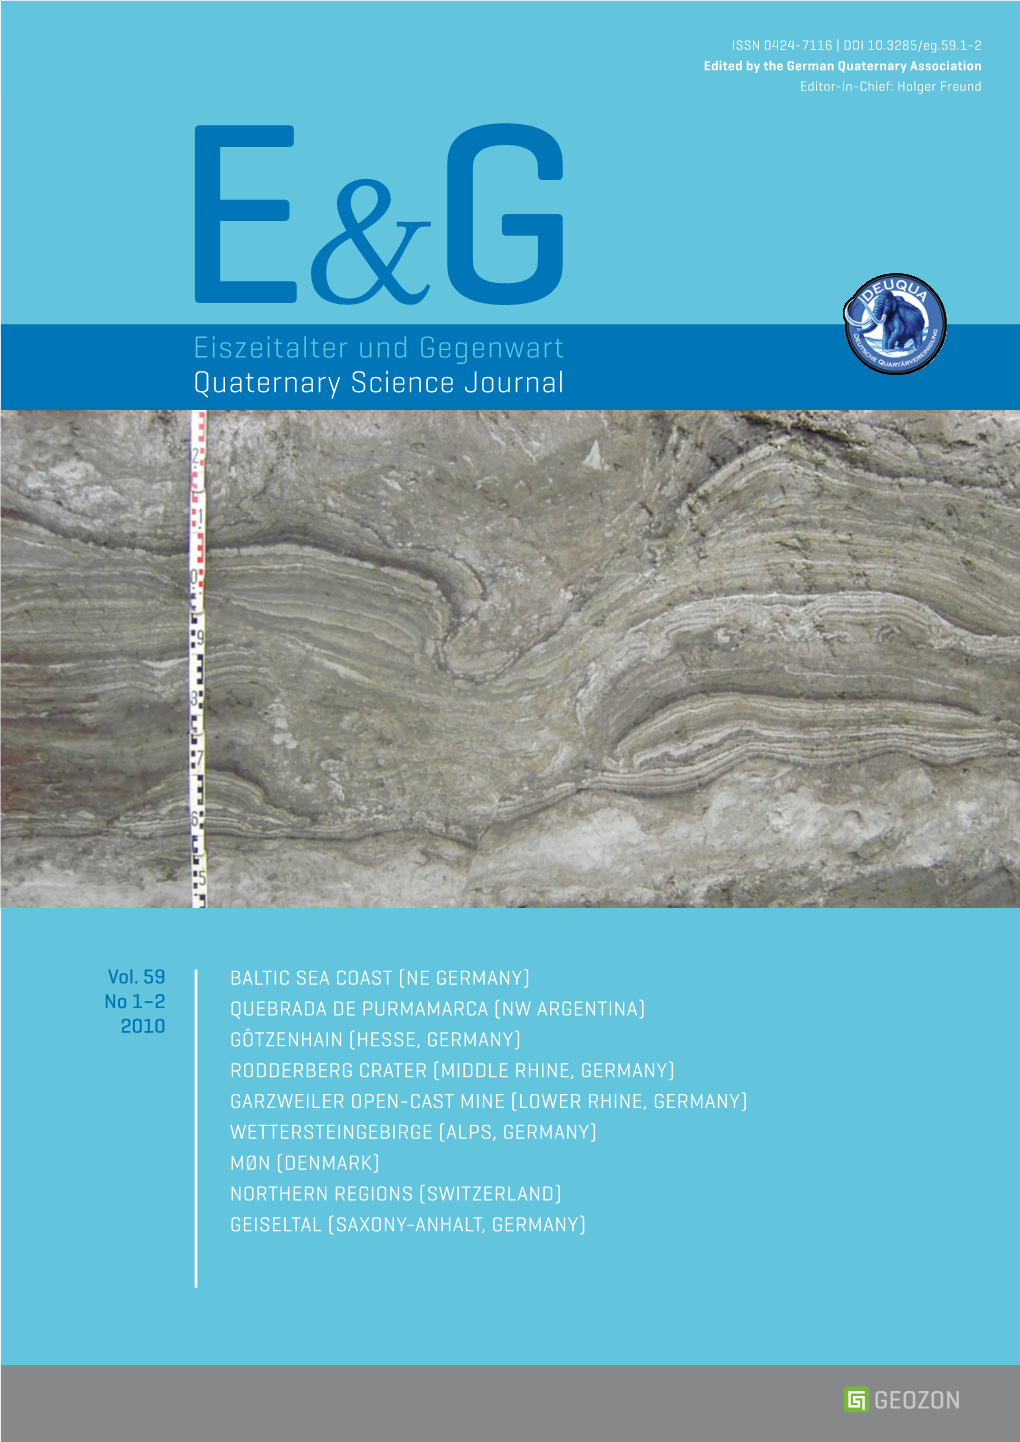 E&G – Quaternary Science Journal Vol. 59 No